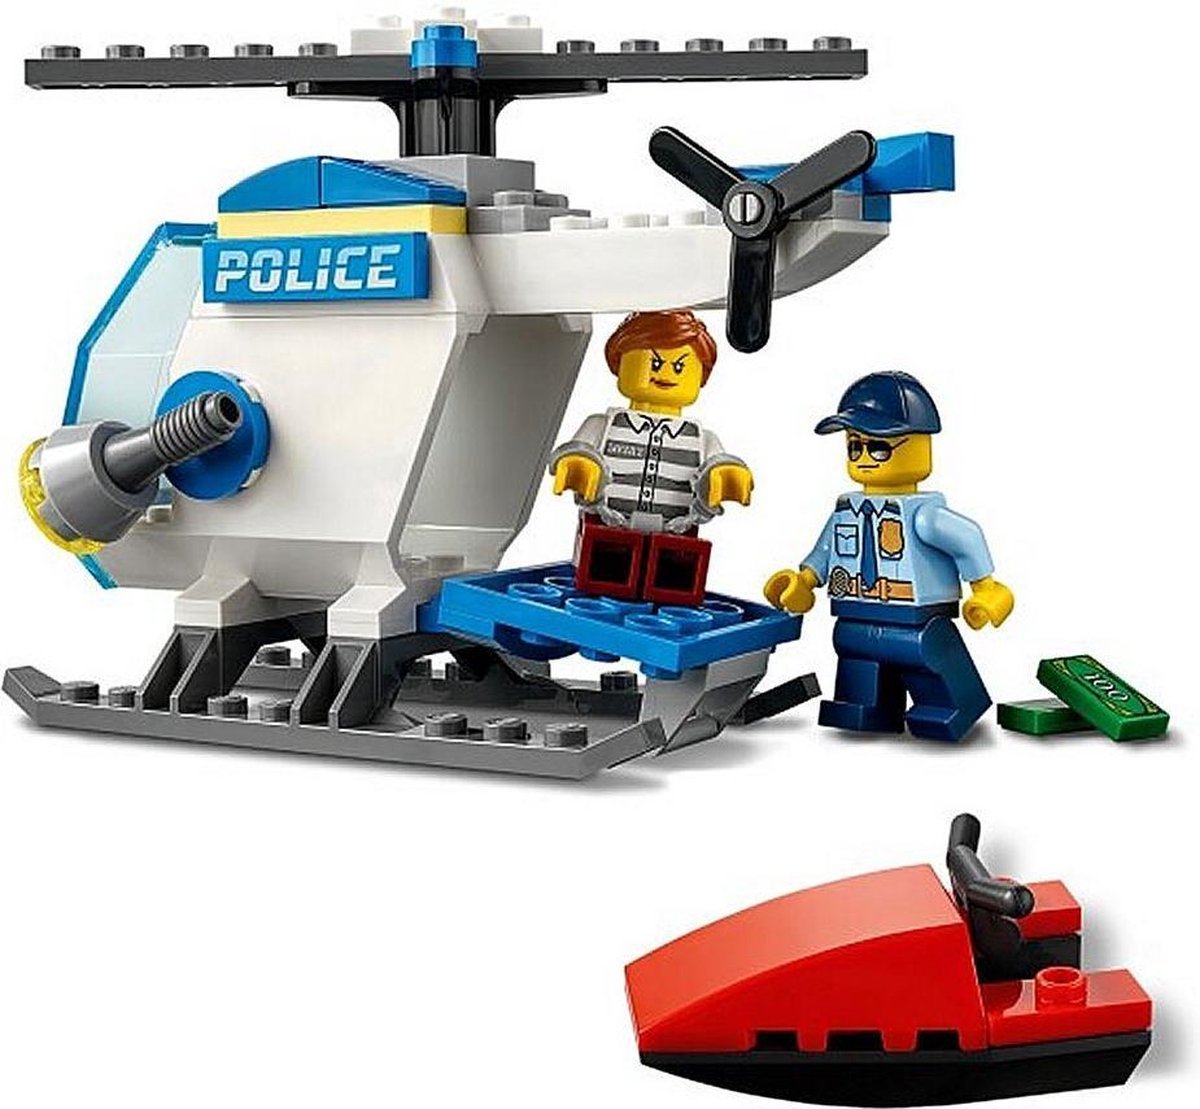 LEGO City 4+ Politiehelikopter - 60275